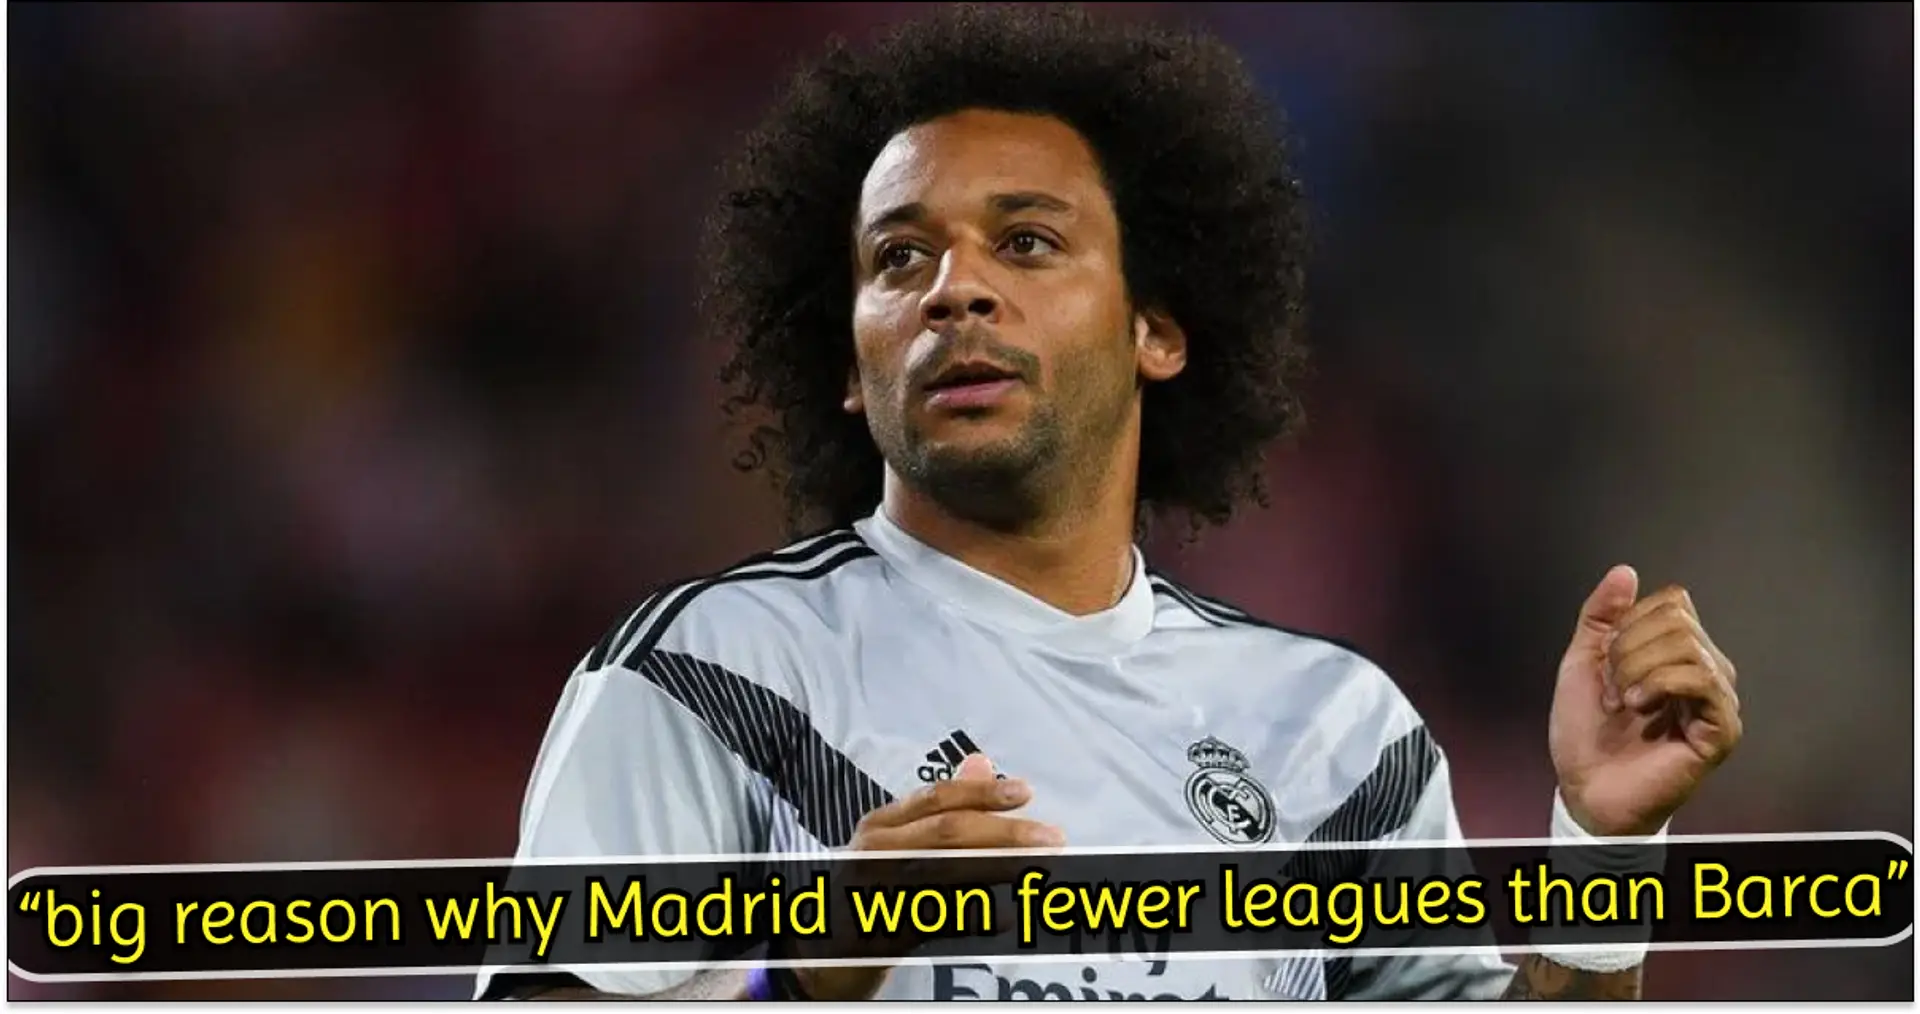 On dit que Marcelo était "le joueur le plus surcoté" au monde - Les supporters madrilènes prennent la défense de la légende